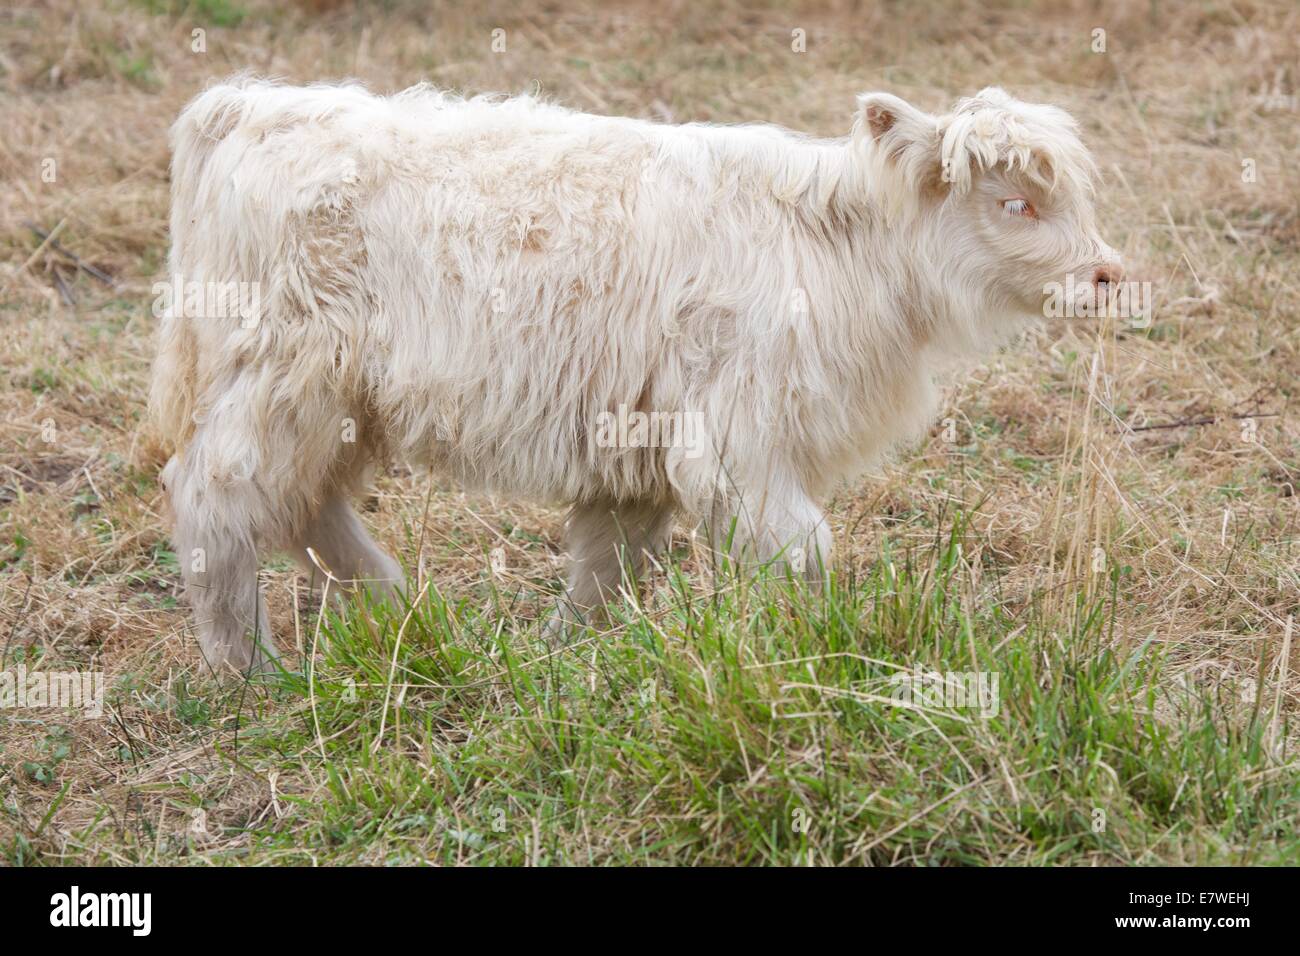 Scottish Highland ganado son conocidos por ser excepcionalmente resistente y fácil de cultivar. También son bellos animales! Foto de stock